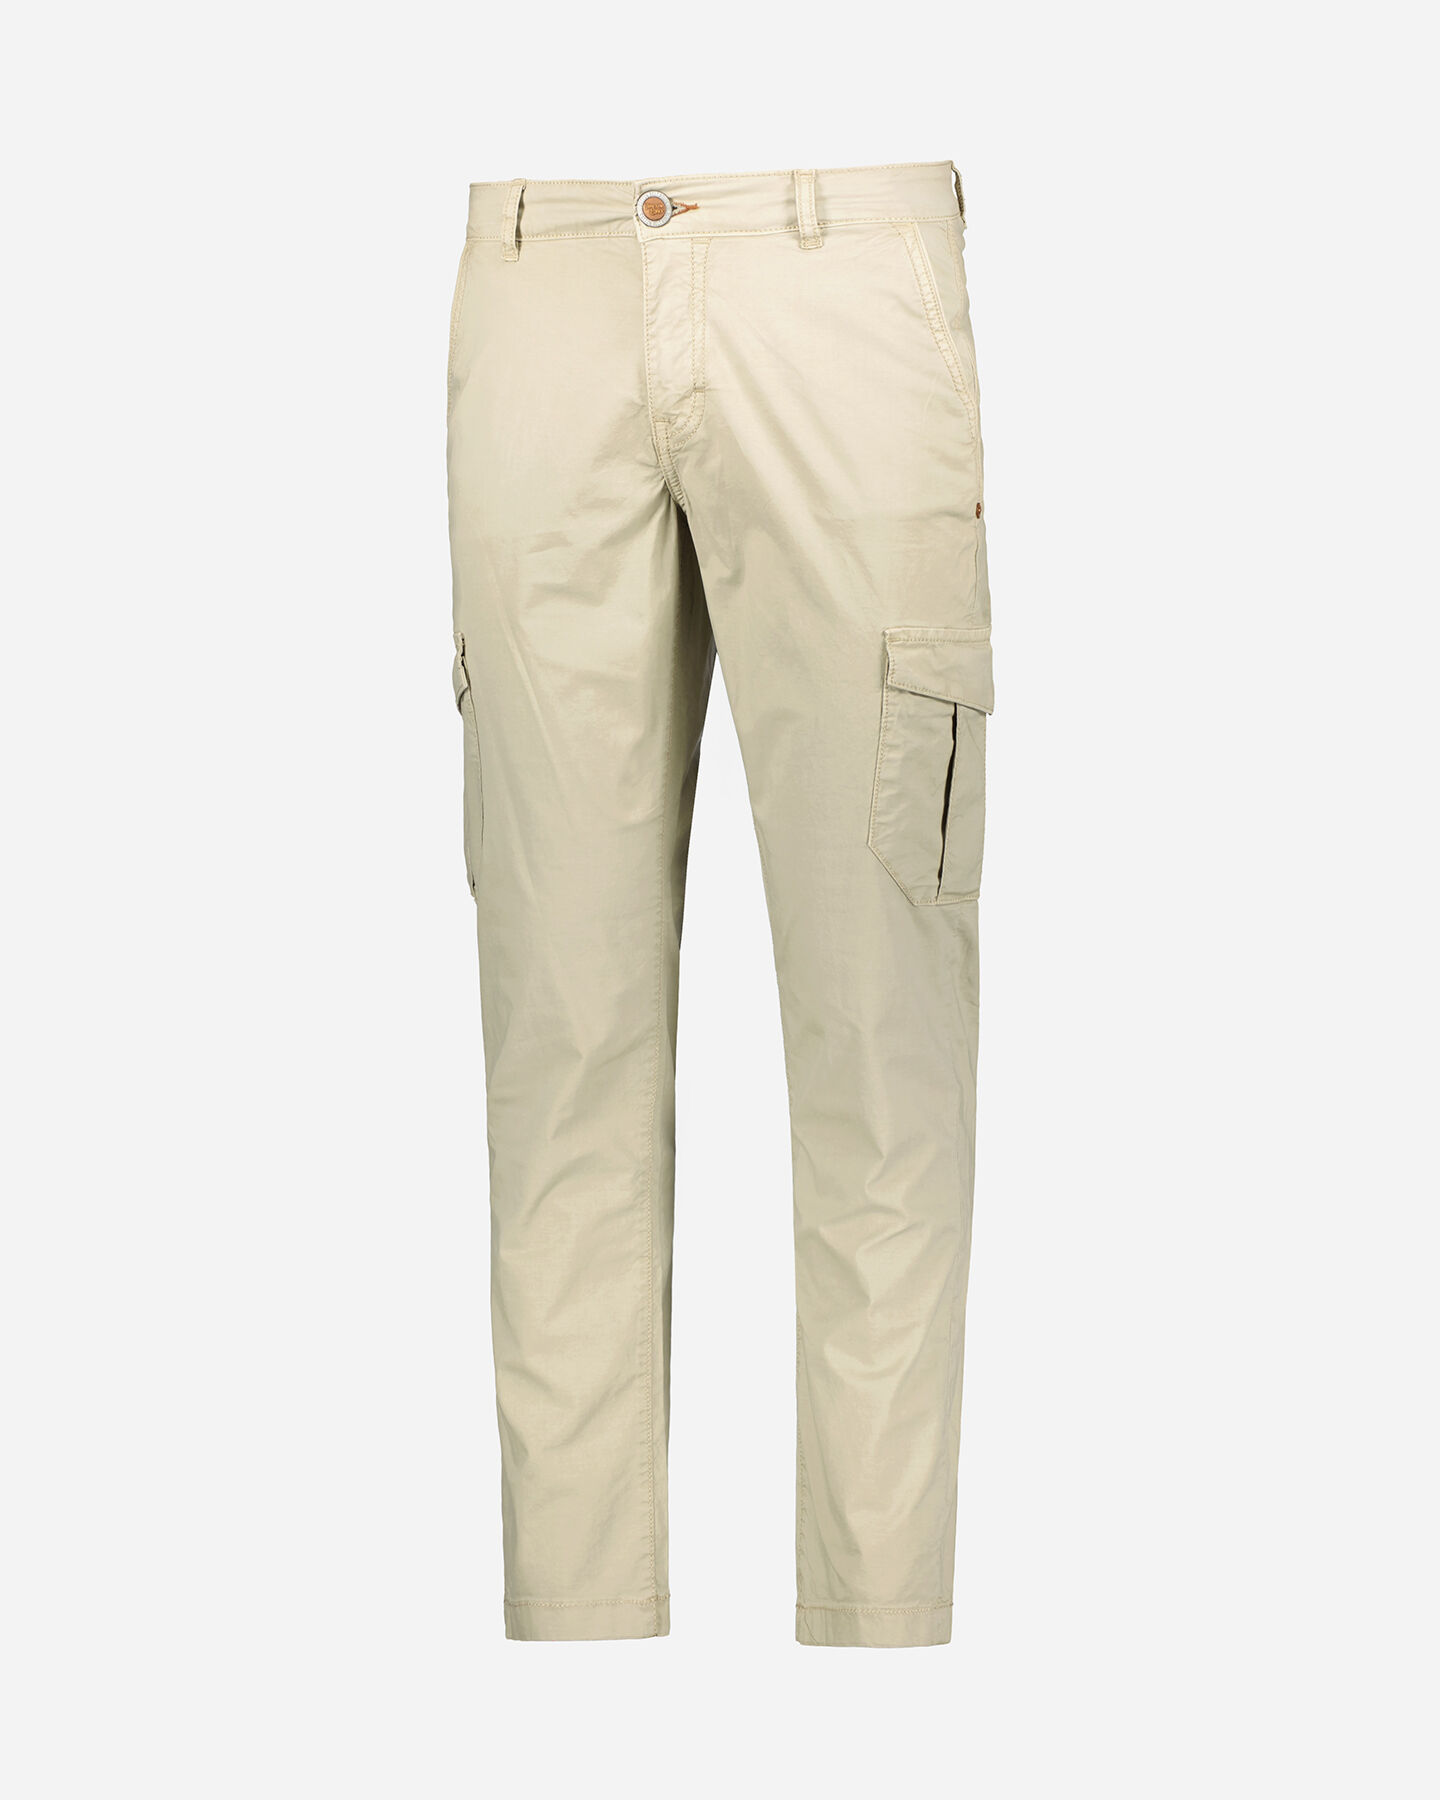  Pantalone COTTON BELT FARGO M S4121190|007|32 scatto 0